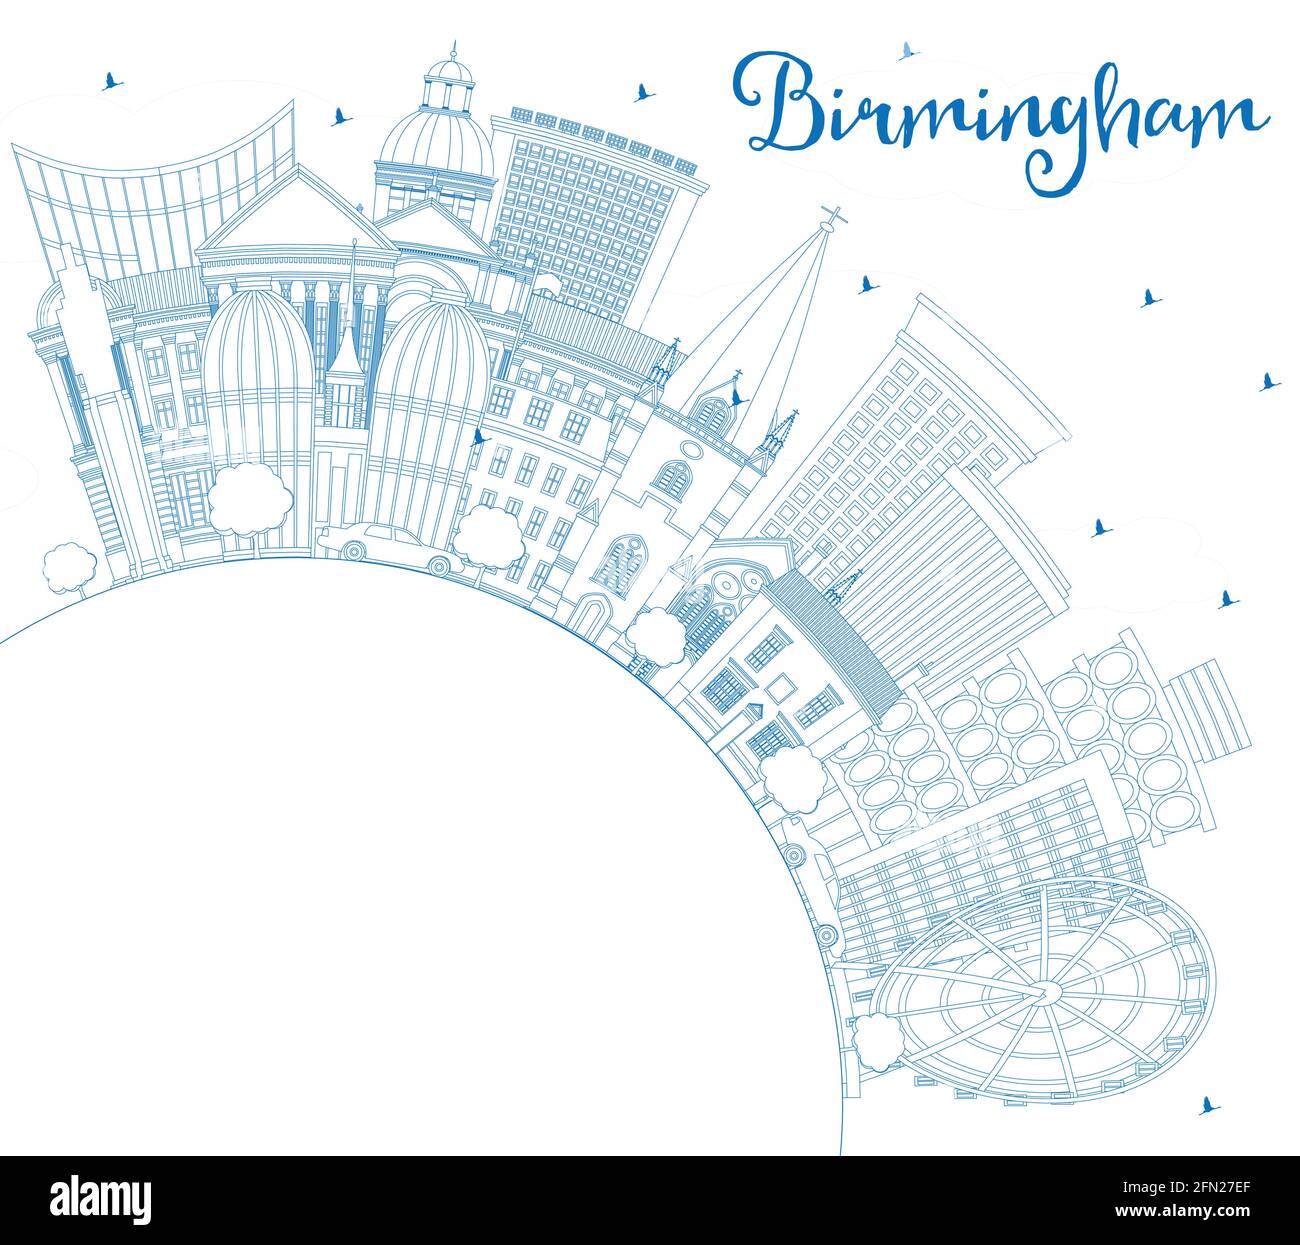 Profilo Birmingham UK City Skyline con edifici blu e Copy Space. Illustrazione vettoriale. Il paesaggio urbano di Birmingham con i punti di riferimento. Viaggi d'affari. Illustrazione Vettoriale